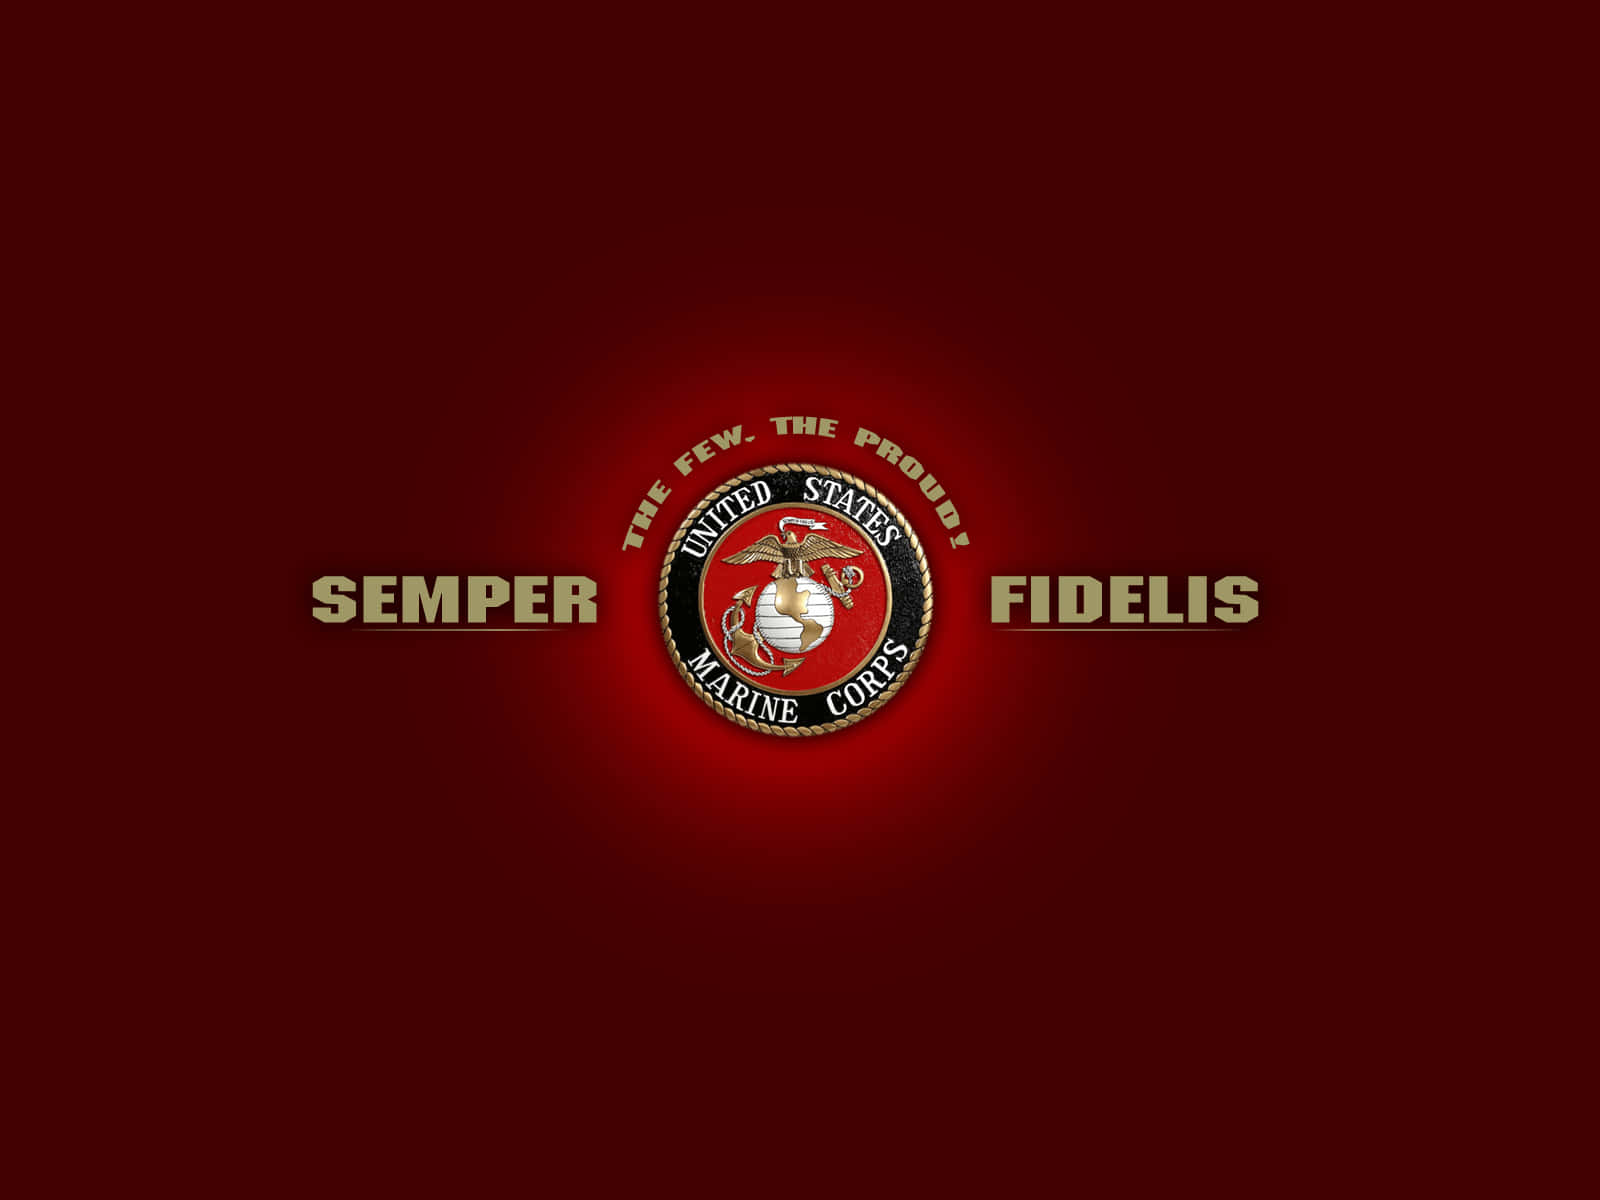 Semper Fidelis - De Forenede Staters Marinetropper Wallpaper